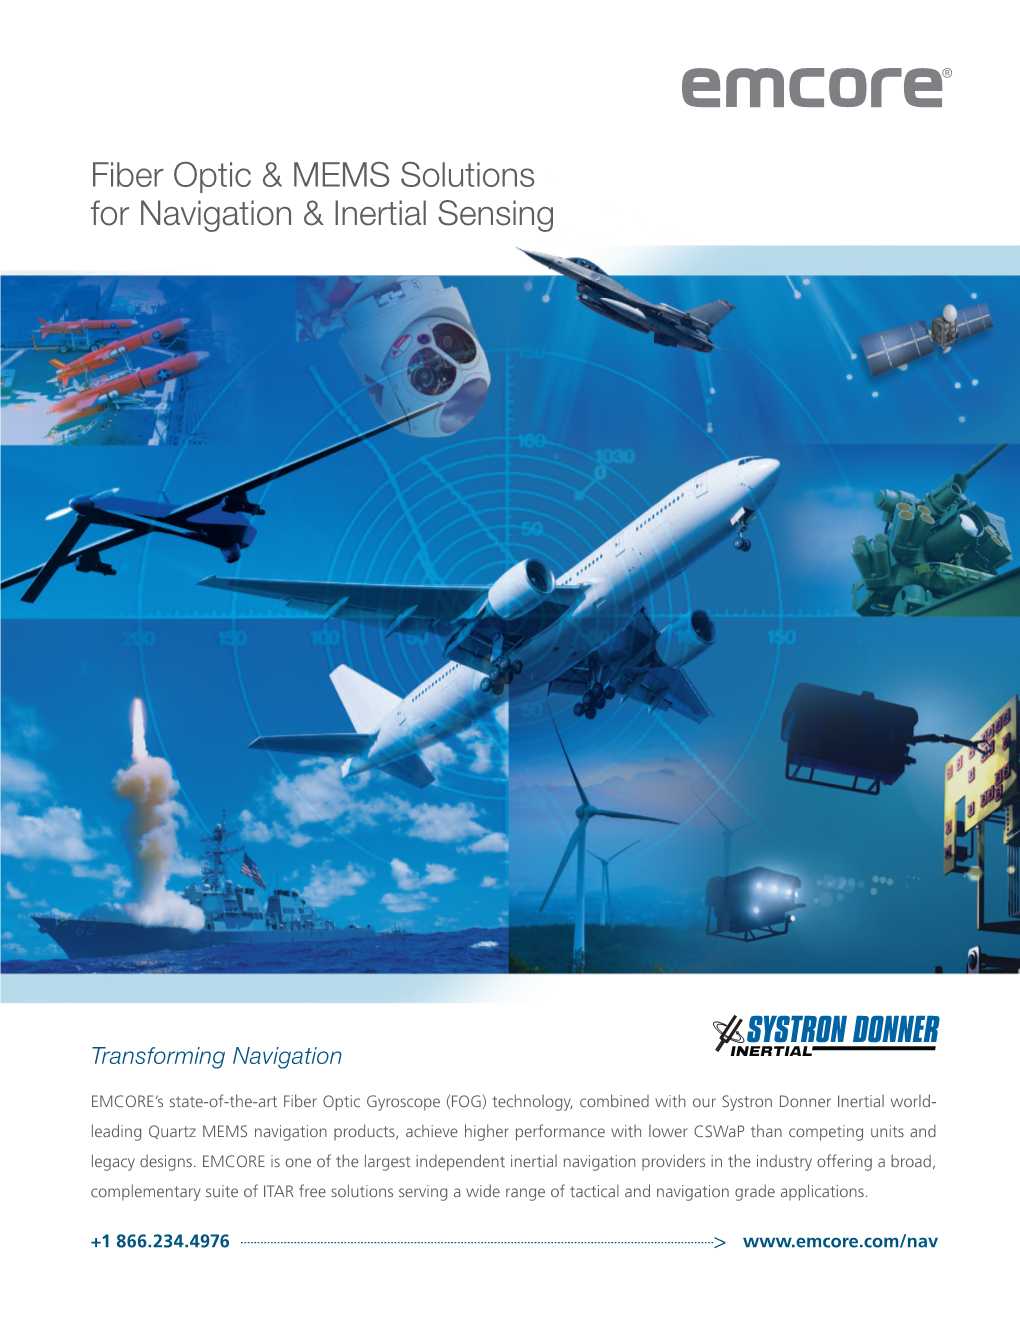 Fiber Optic & MEMS Solutions for Navigation & Inertial Sensing